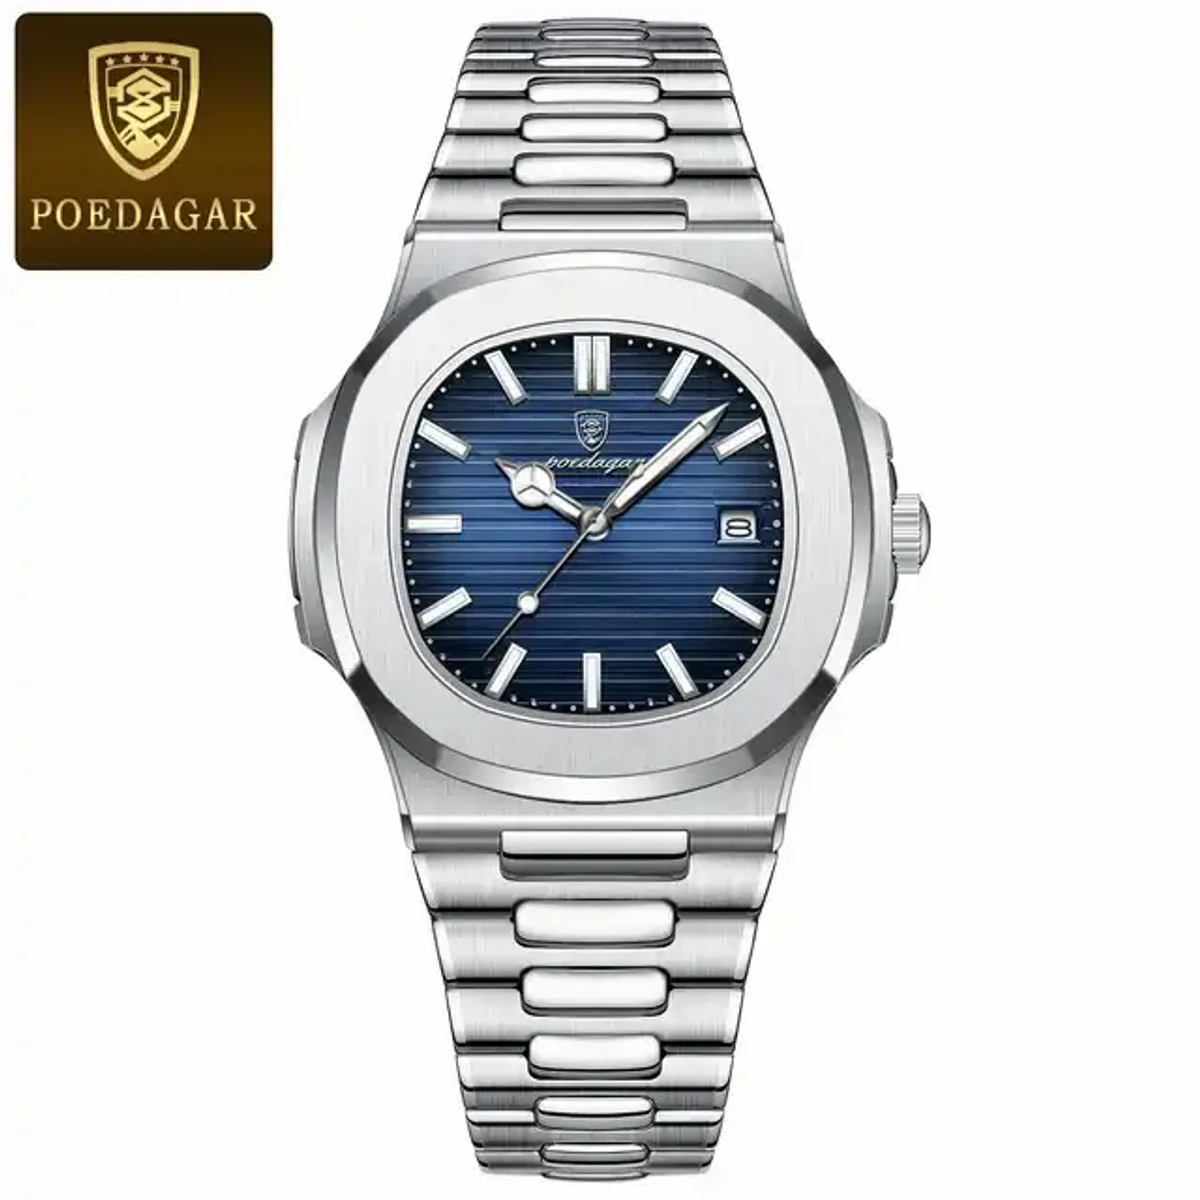 Poedagar 613 Business Quartz Luxury Stainless Steel Watch for Men – Silver Blue